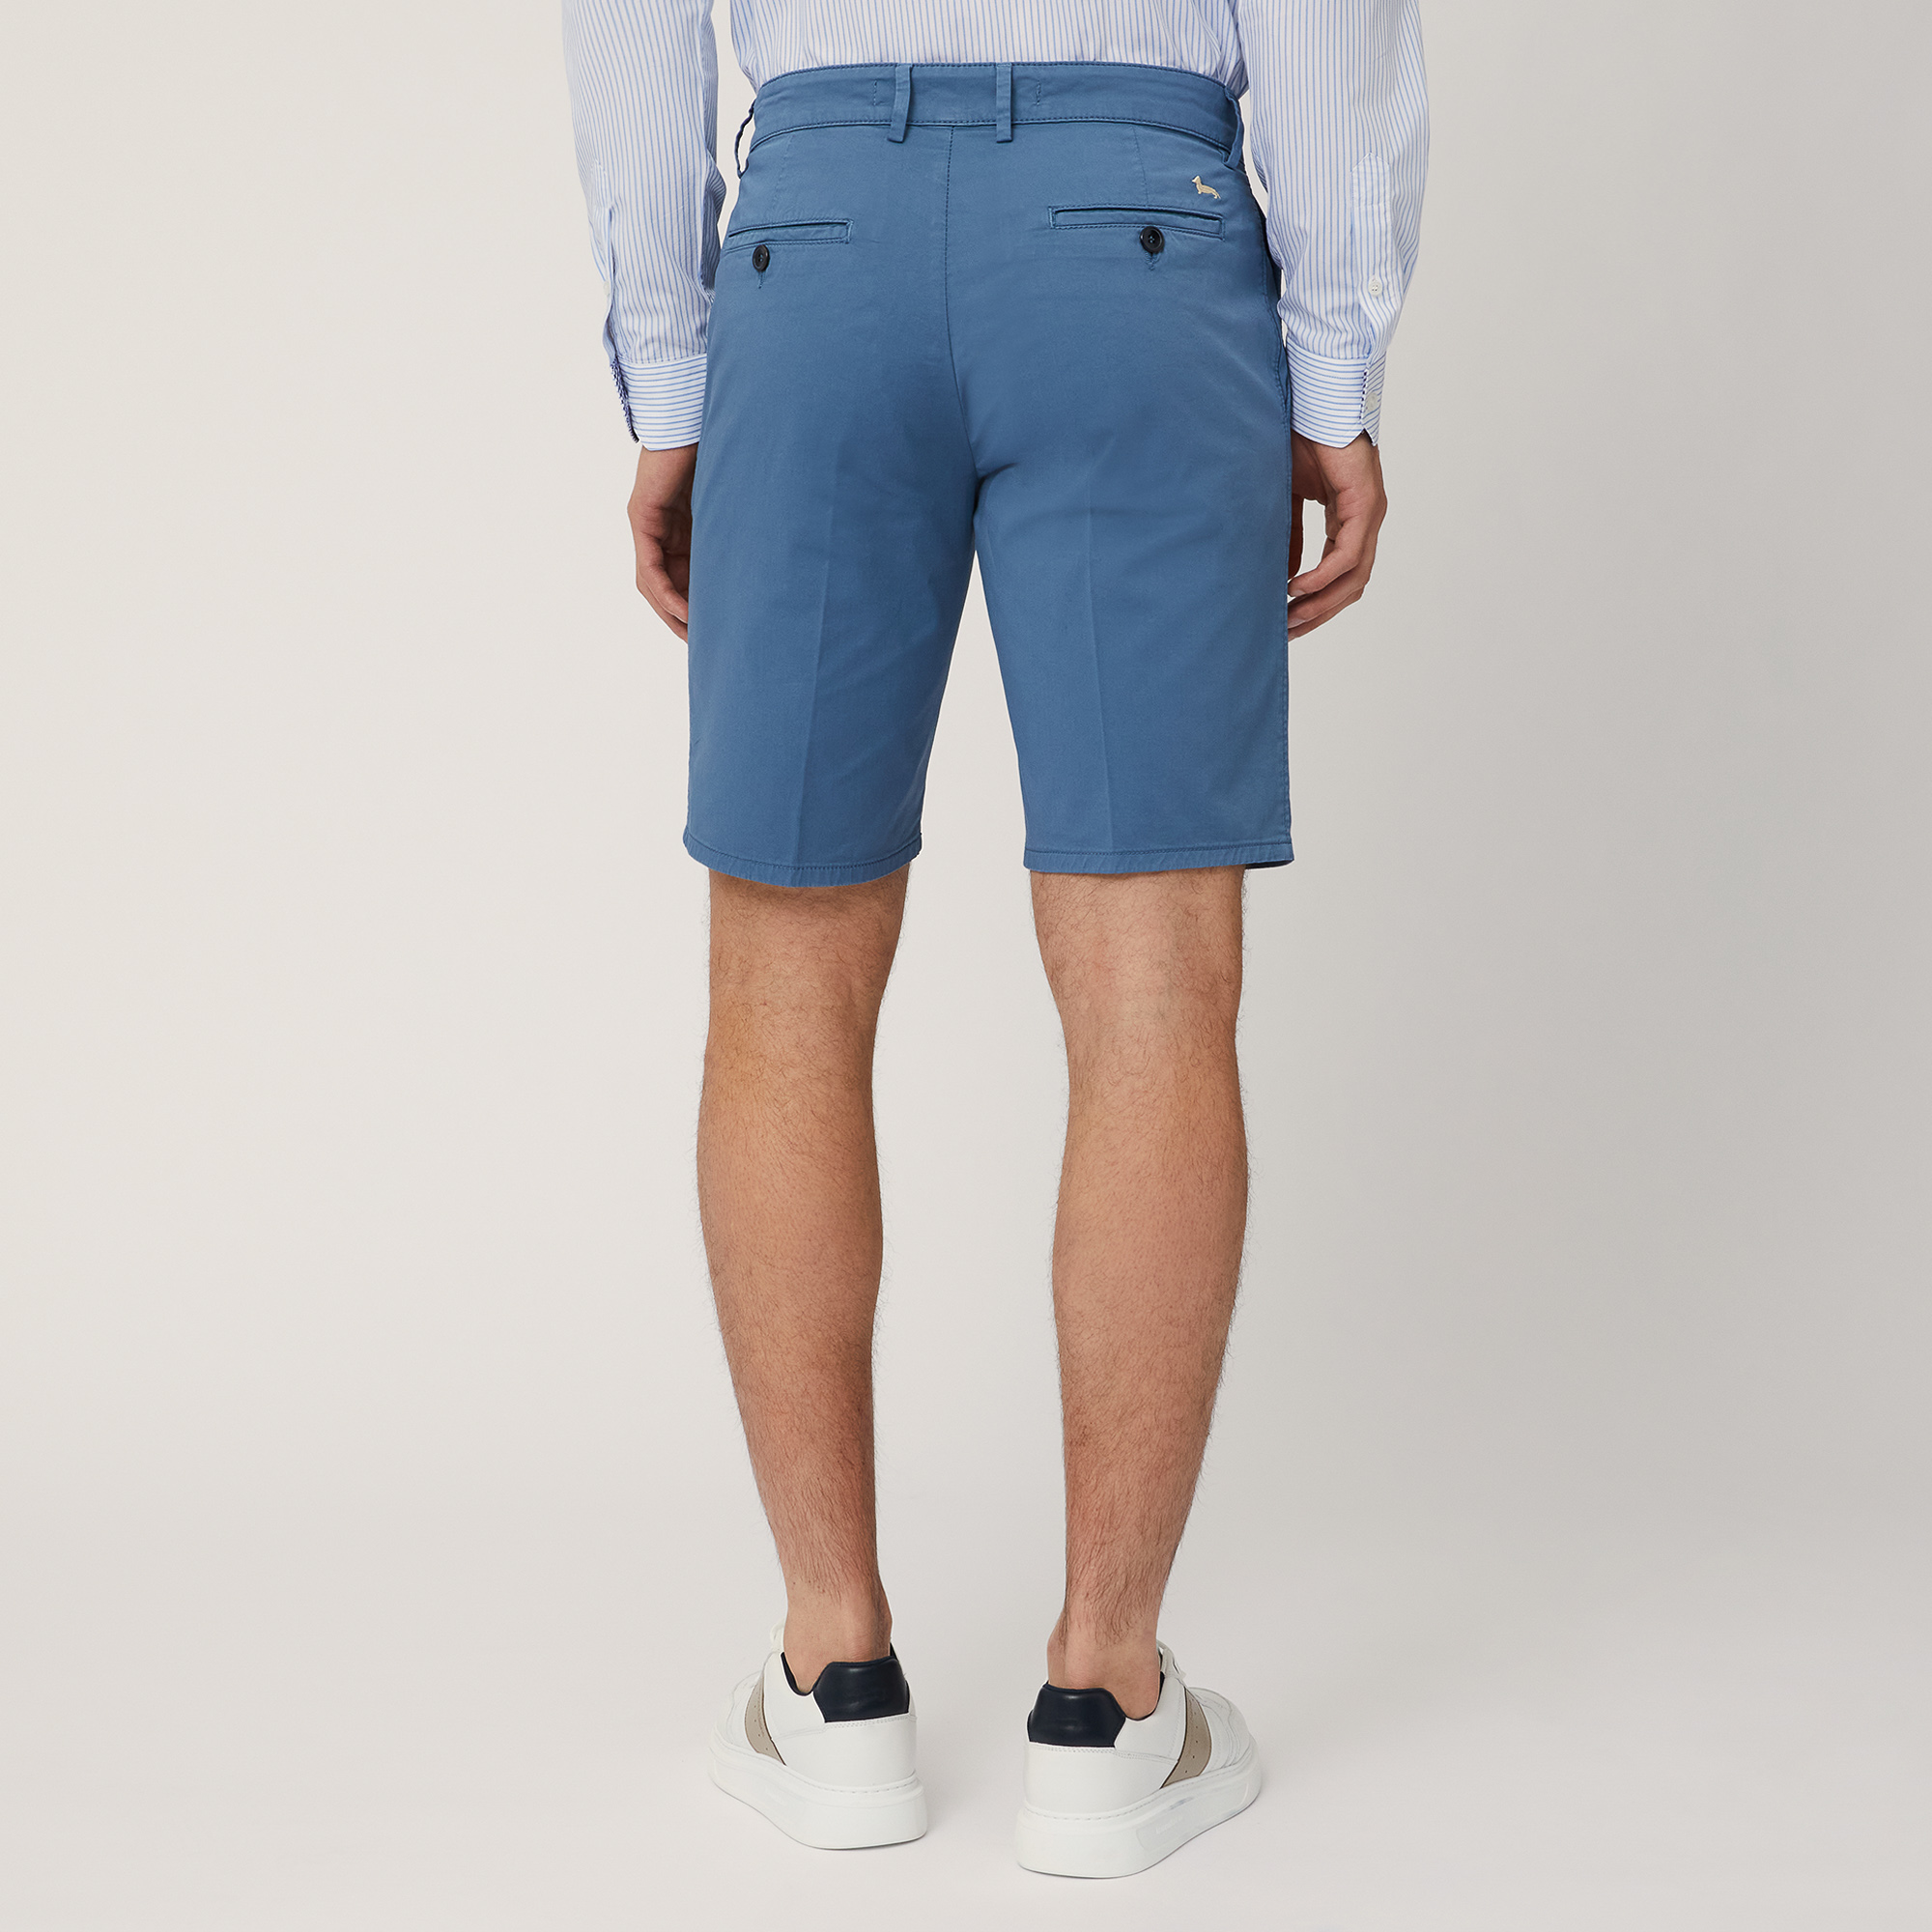 Regular Fit Bermuda Shorts, Blue, large image number 1